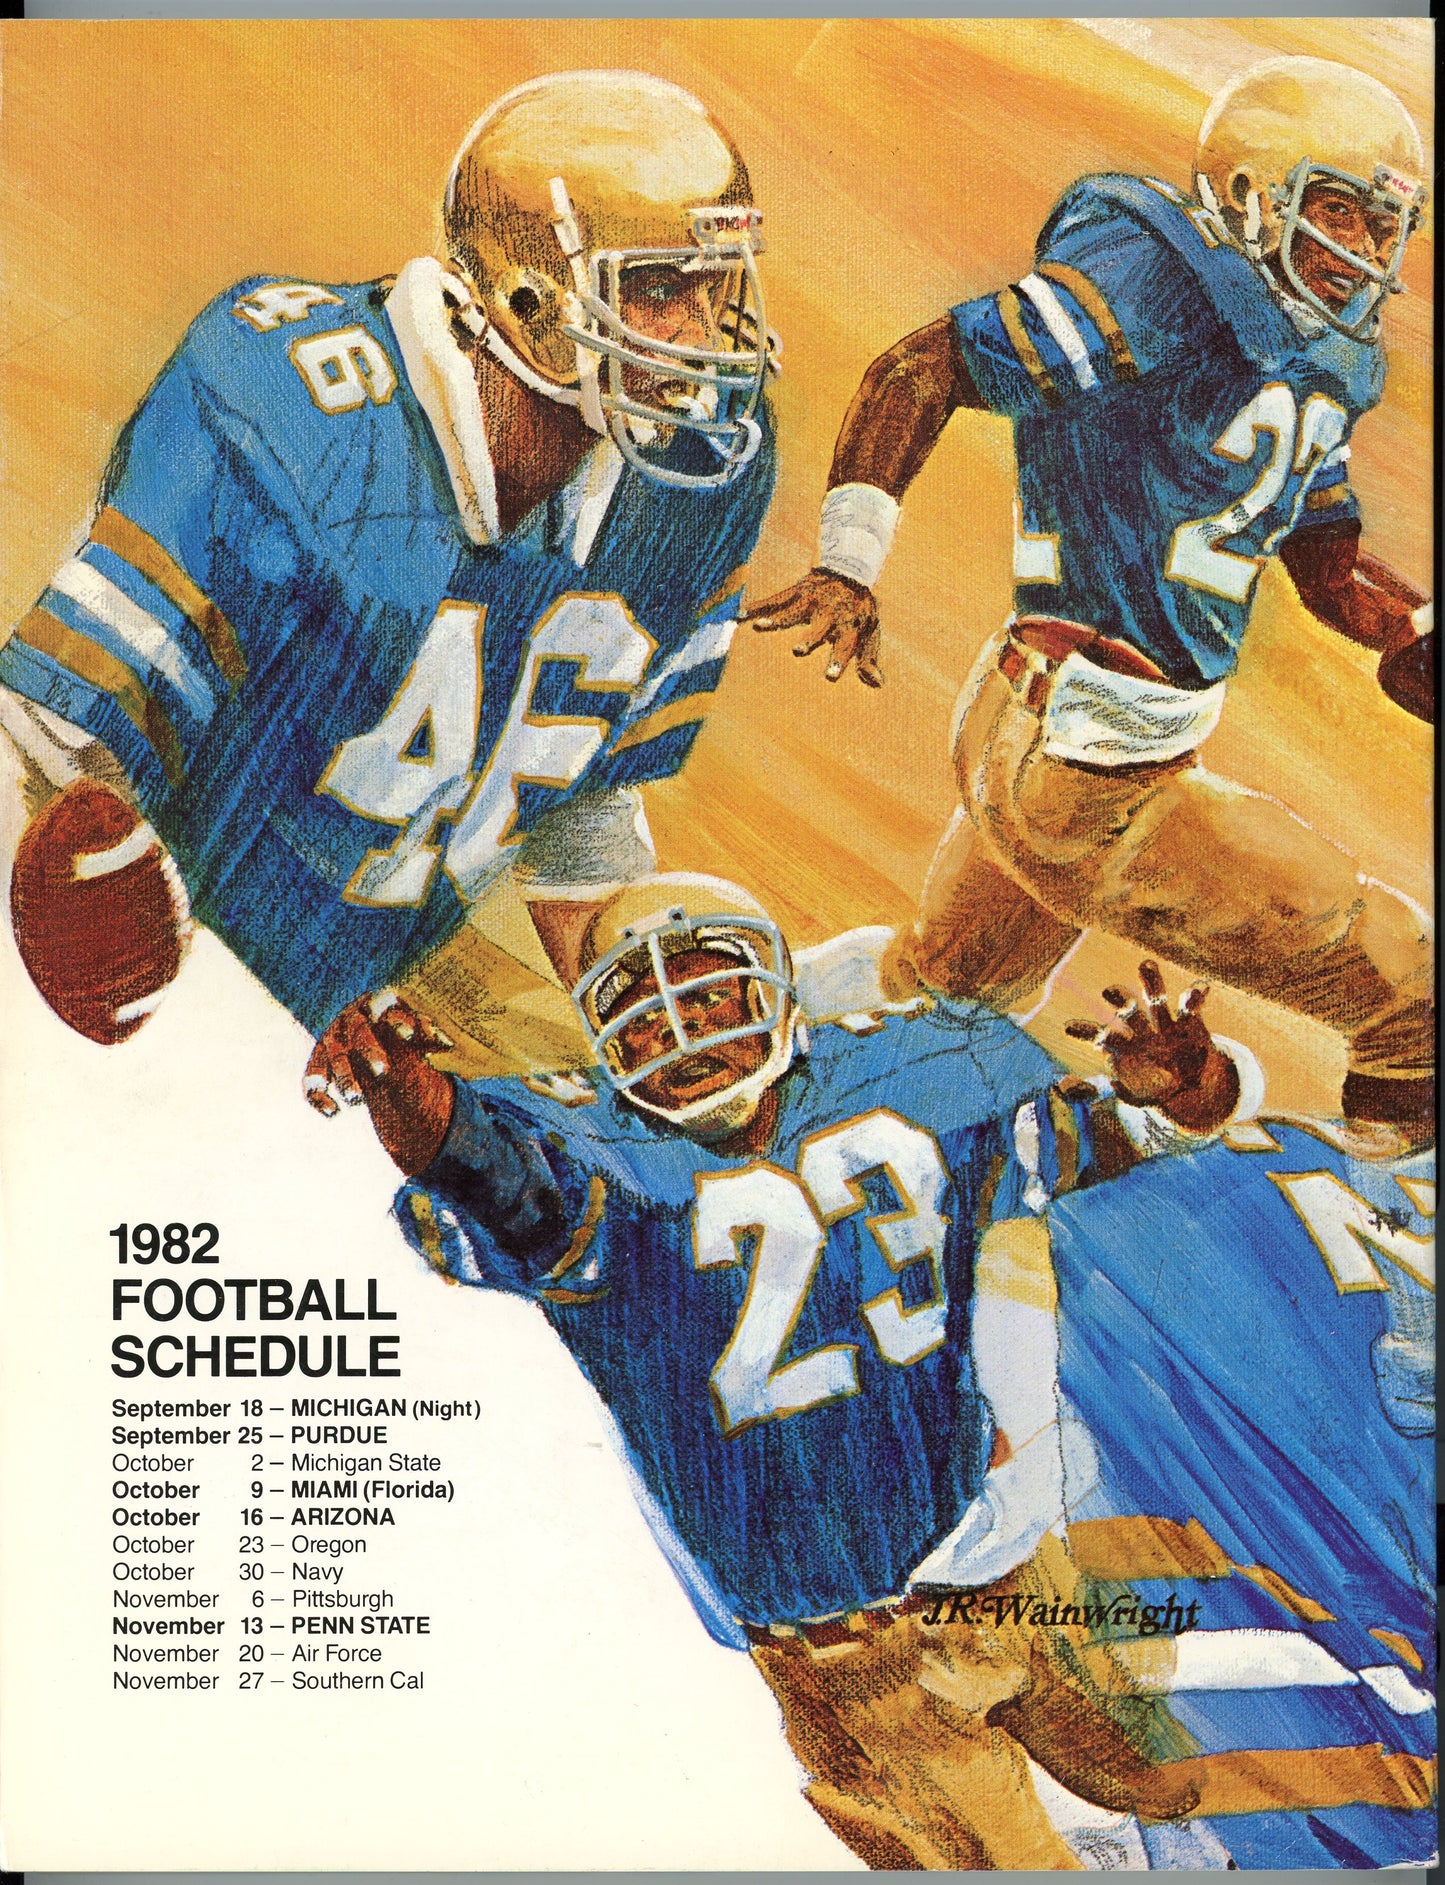 Original 1982 Notre Dame College Football Program Media Guide